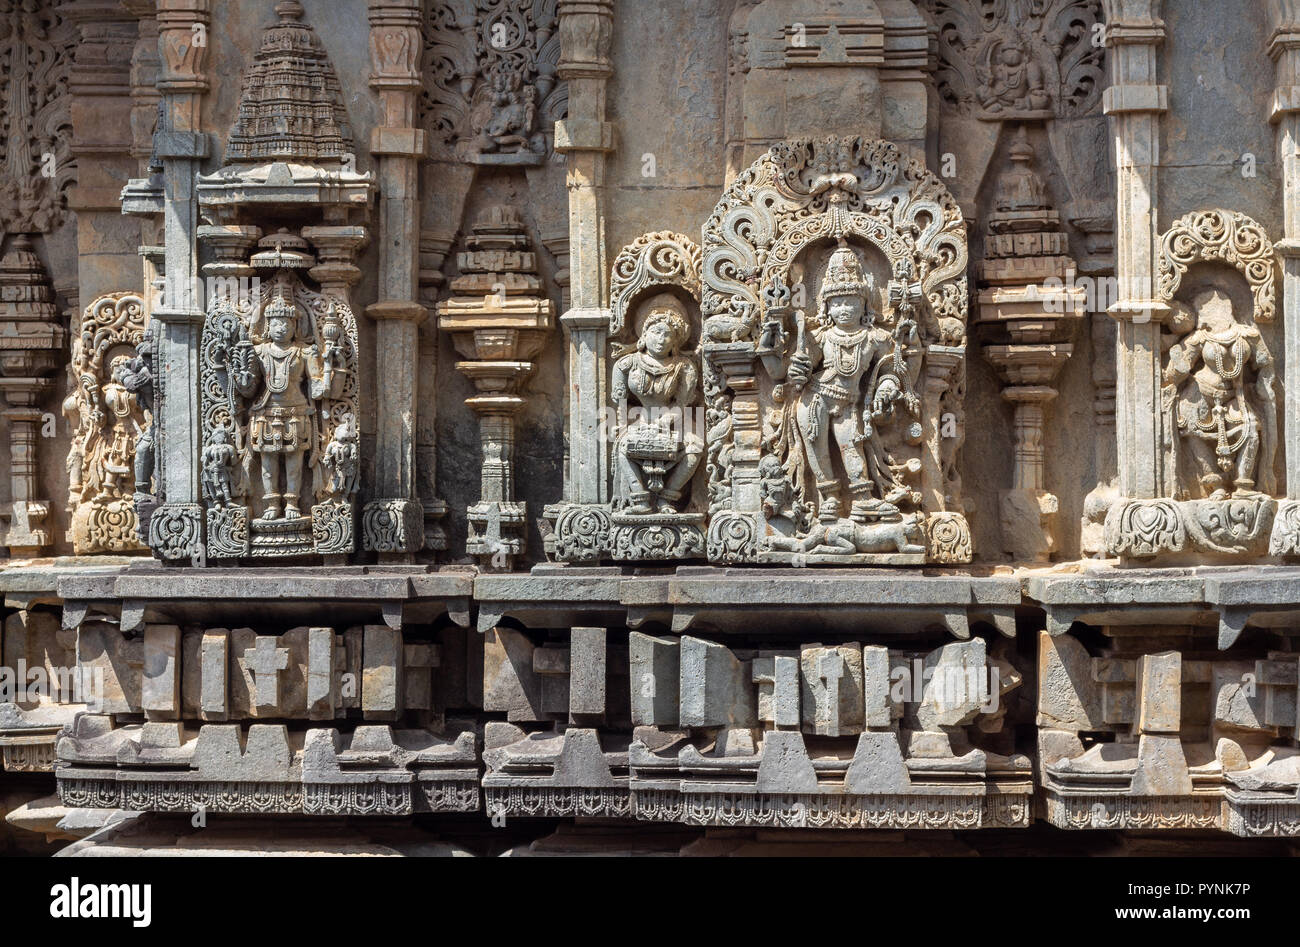 Aufwendigen Schnitzereien der hinduistischen Gottheiten und Puranischen Geschichten in Belur und Halebid Tempel Prämisse. Belur, Karnataka, Indien. Stockfoto